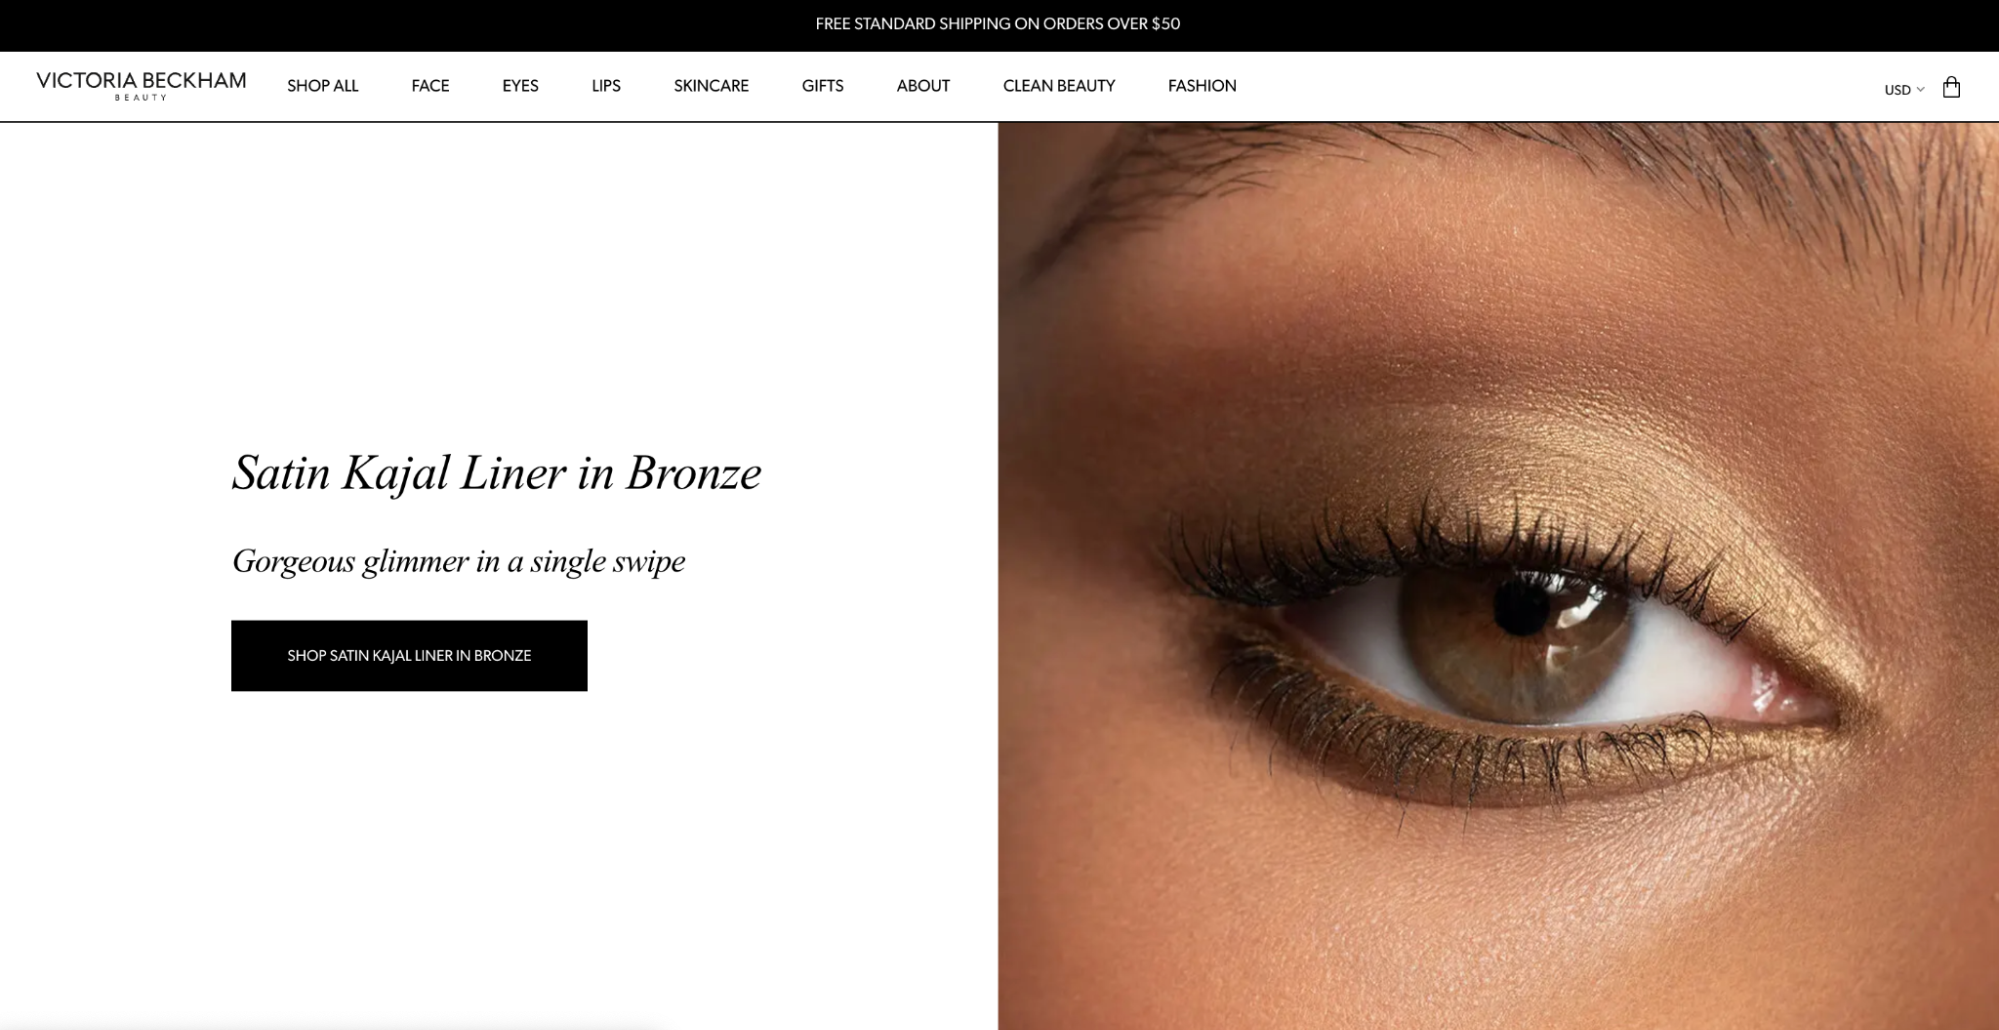 Victoria Beckham Beauty's headless commerce website